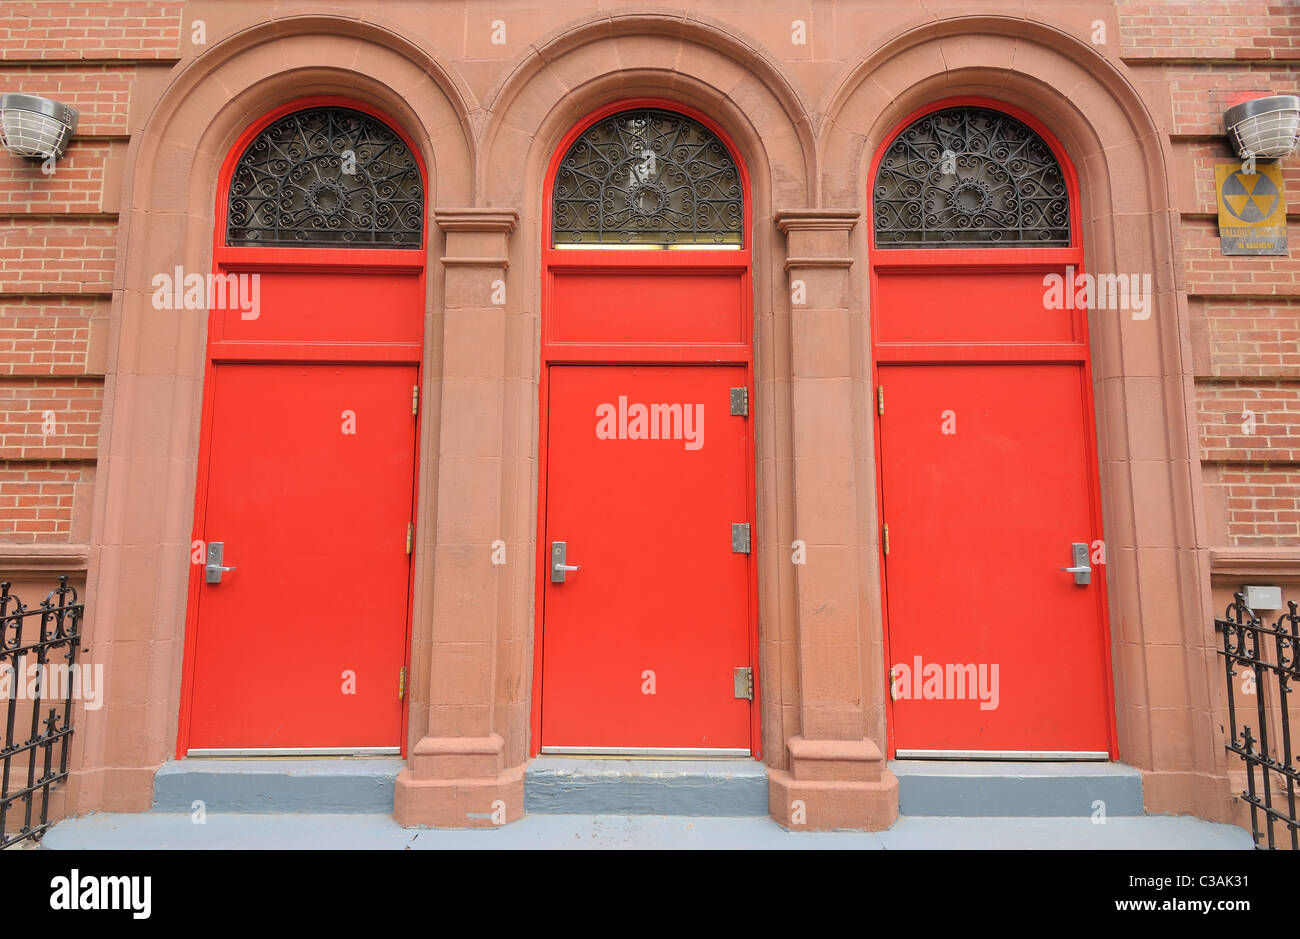 Drei rote Türen am Eingang eines Gebäudes. Stockfoto